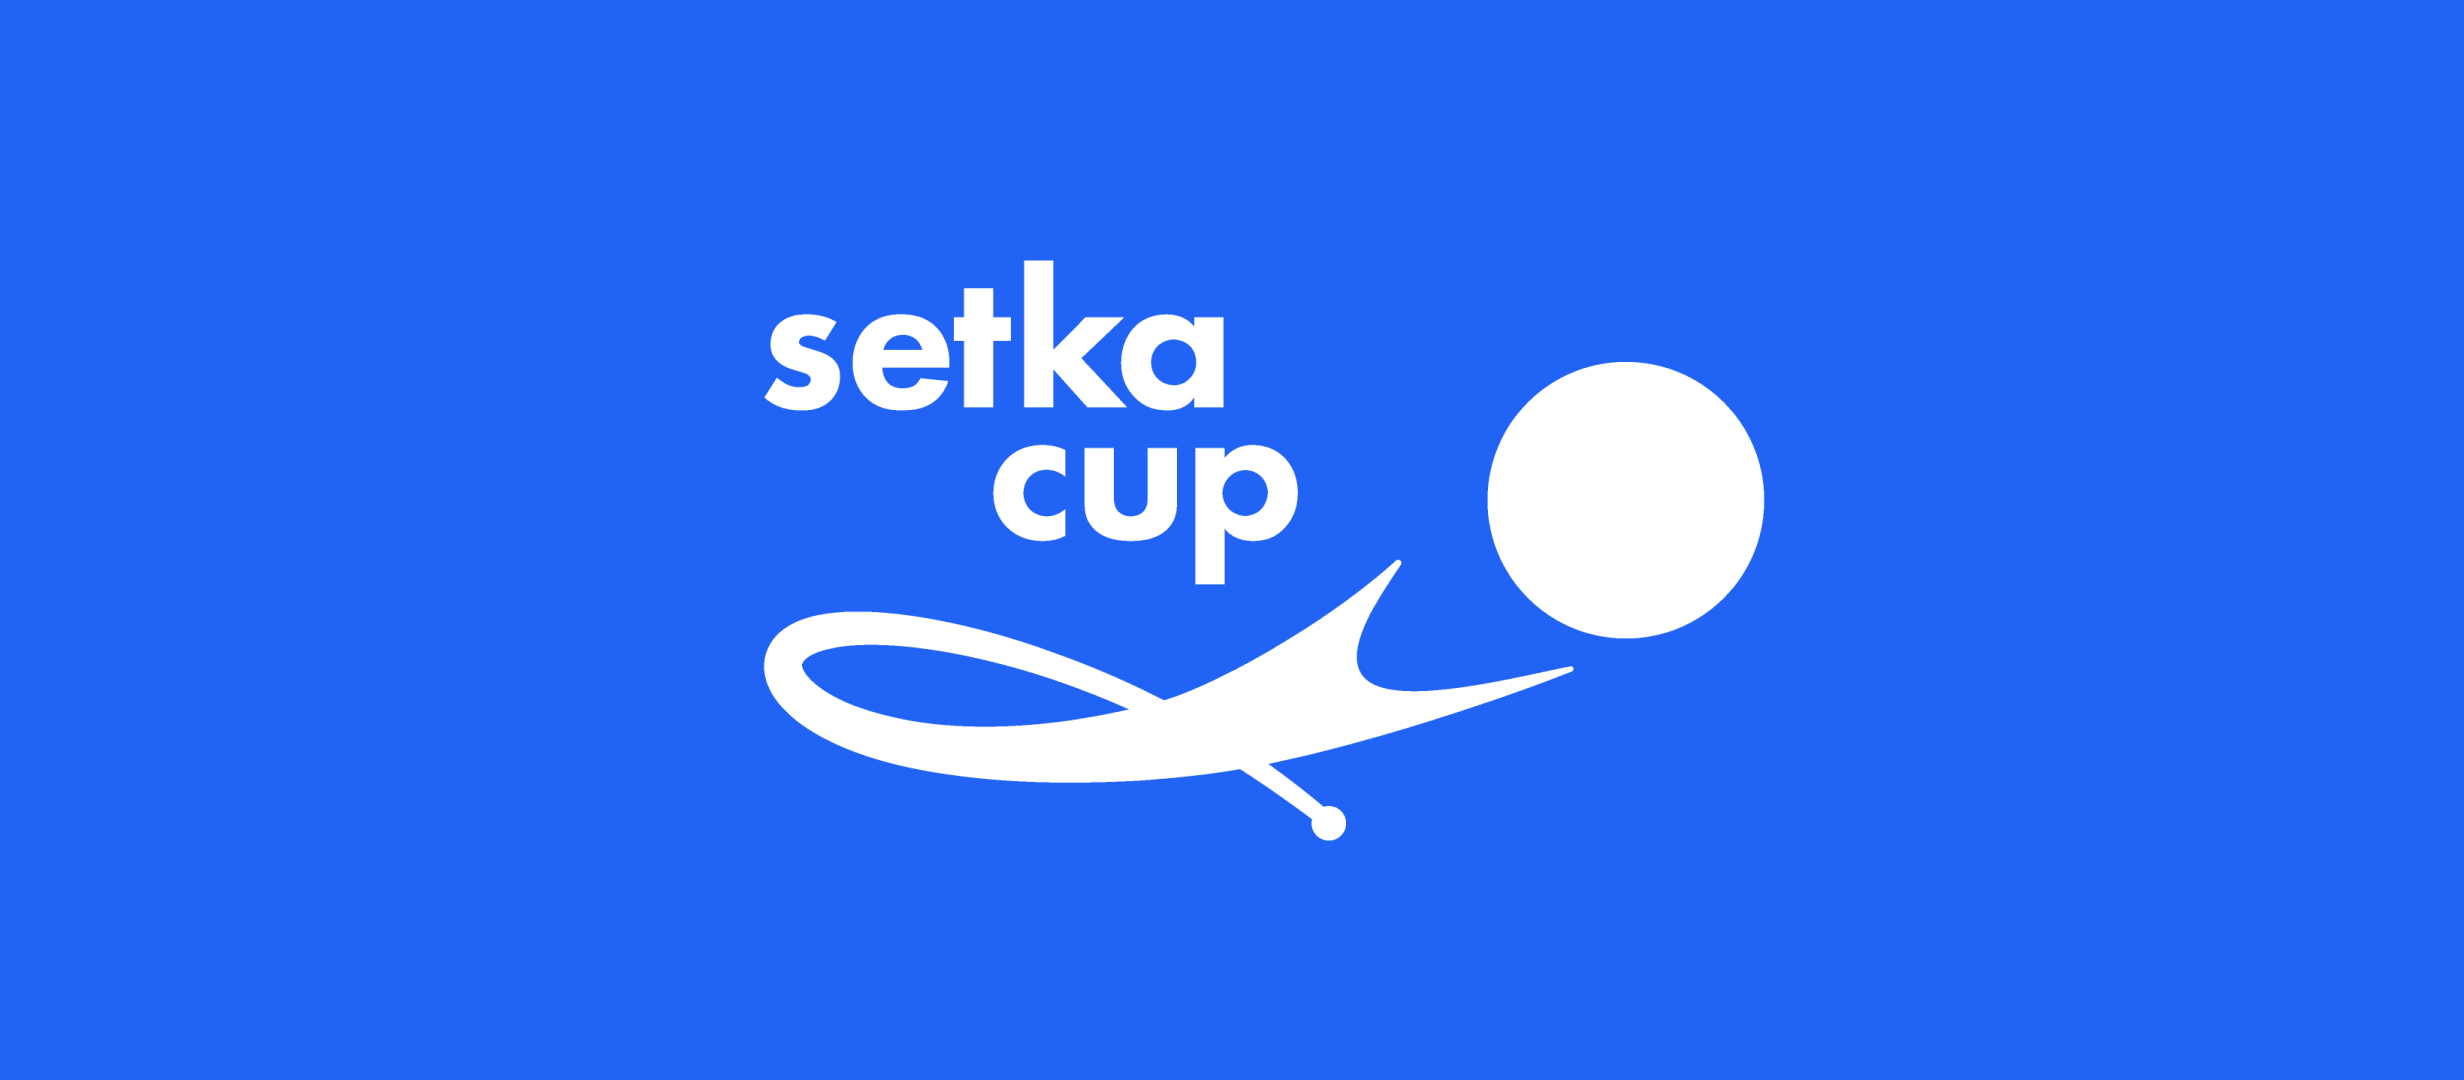 Setka Cup вышла в Европу. CEO компании BETER объясняет перспективы